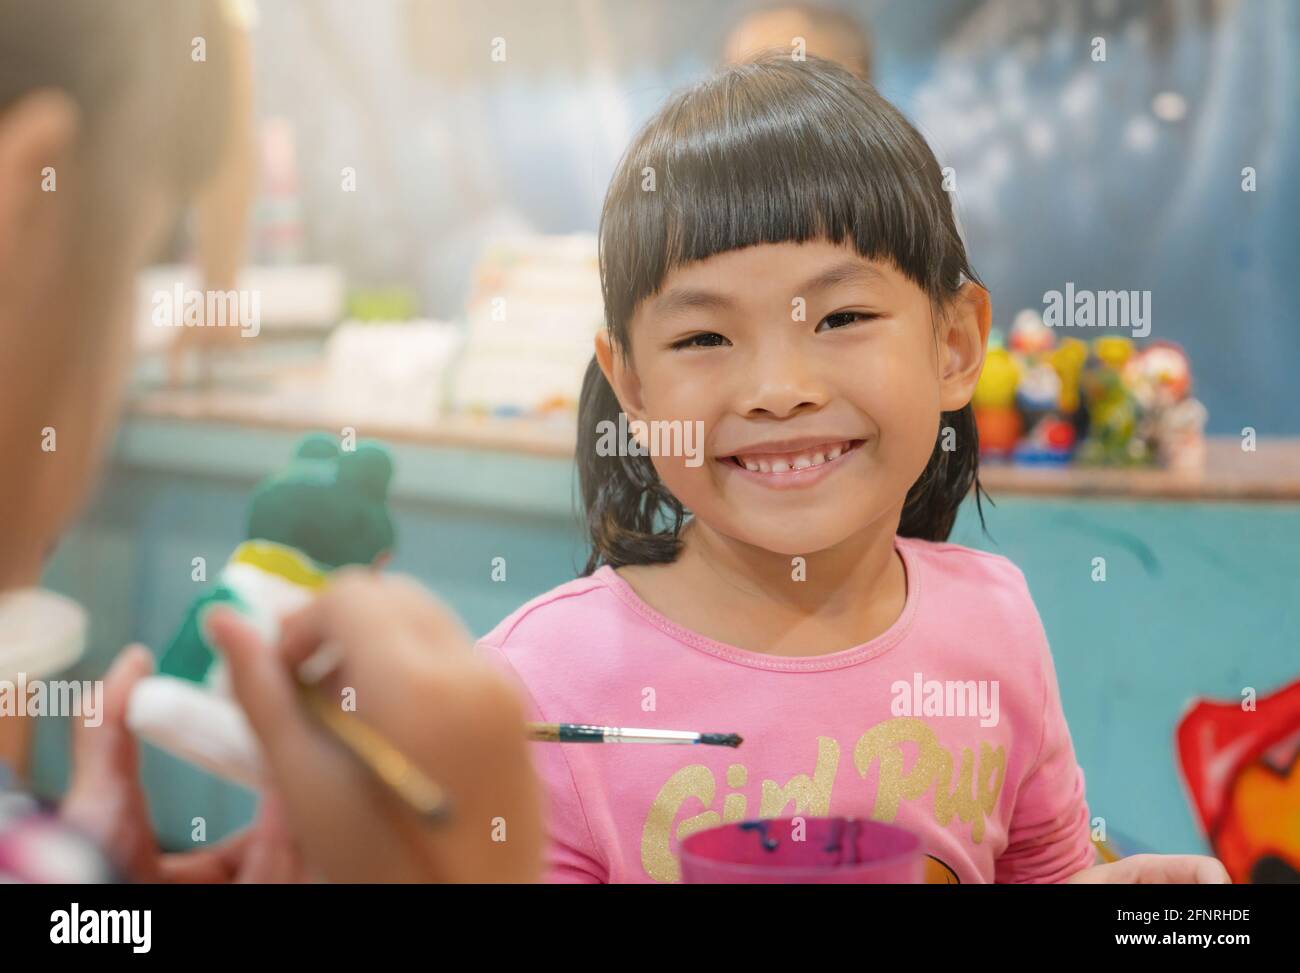 Retrato niña asiática en el taller de arte, cara feliz y sonriente, hermosa sonrisa, cara linda con pelo negro, y bang. Primer plano de clase borroso. Foto de stock